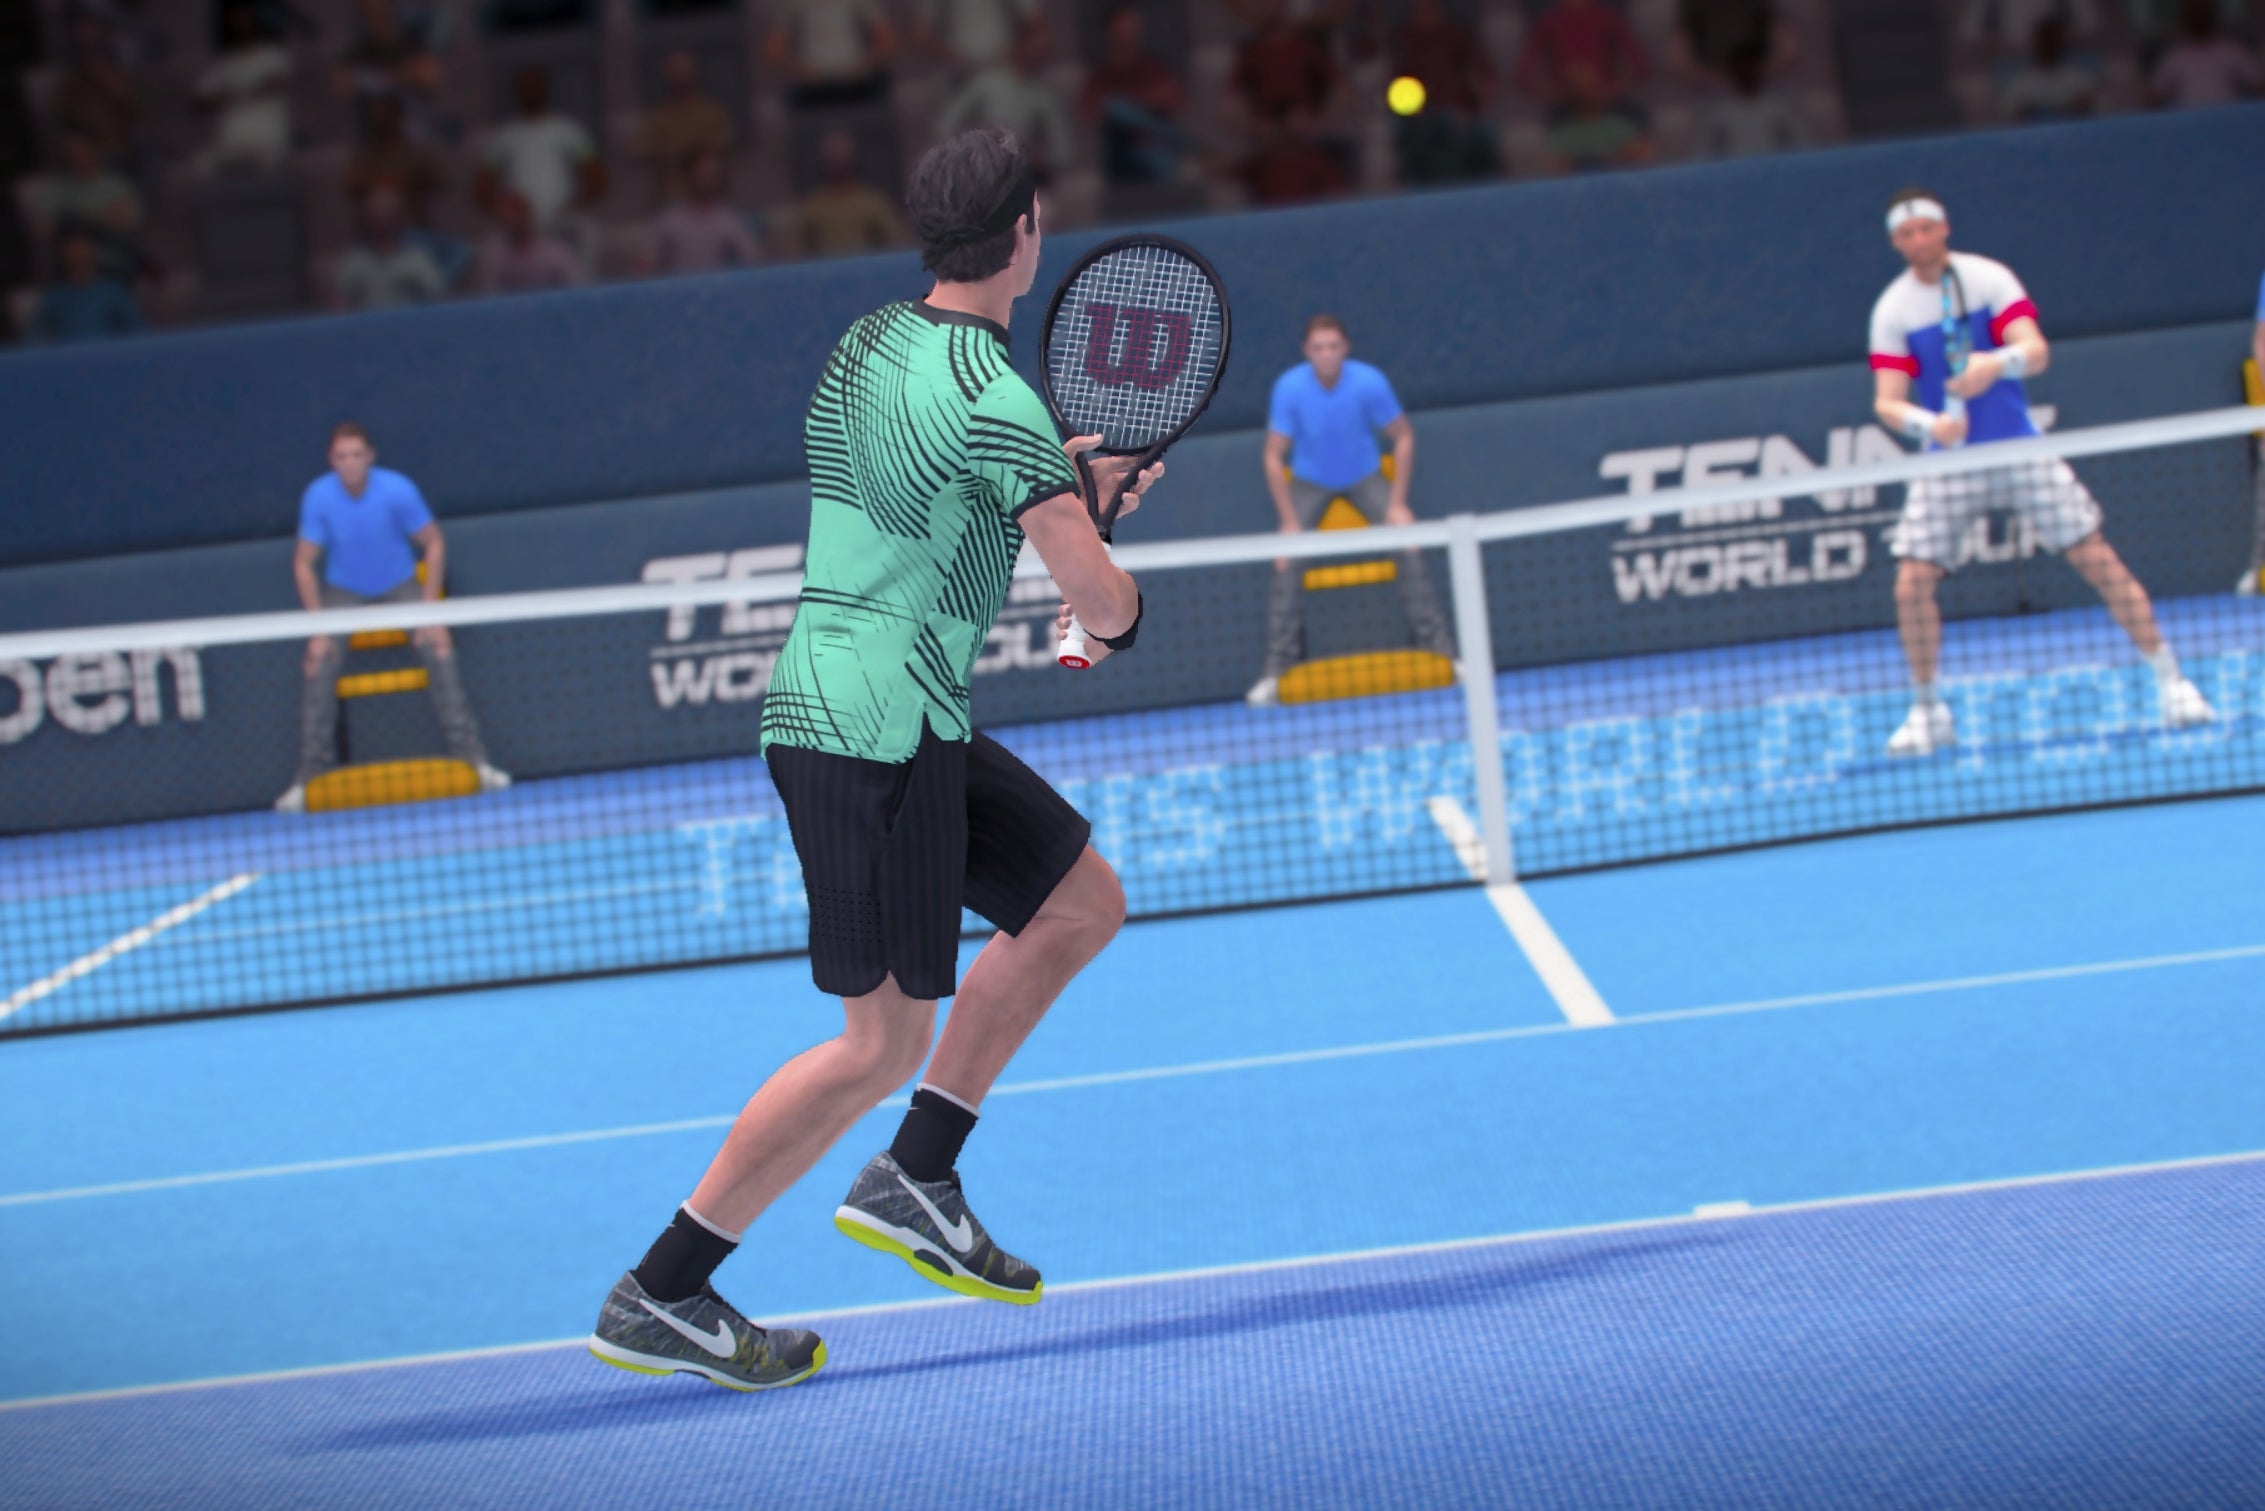 Immagine di Tennis World Tour: un nuovo video di gameplay mostra un incontro tra Federer e Monfils